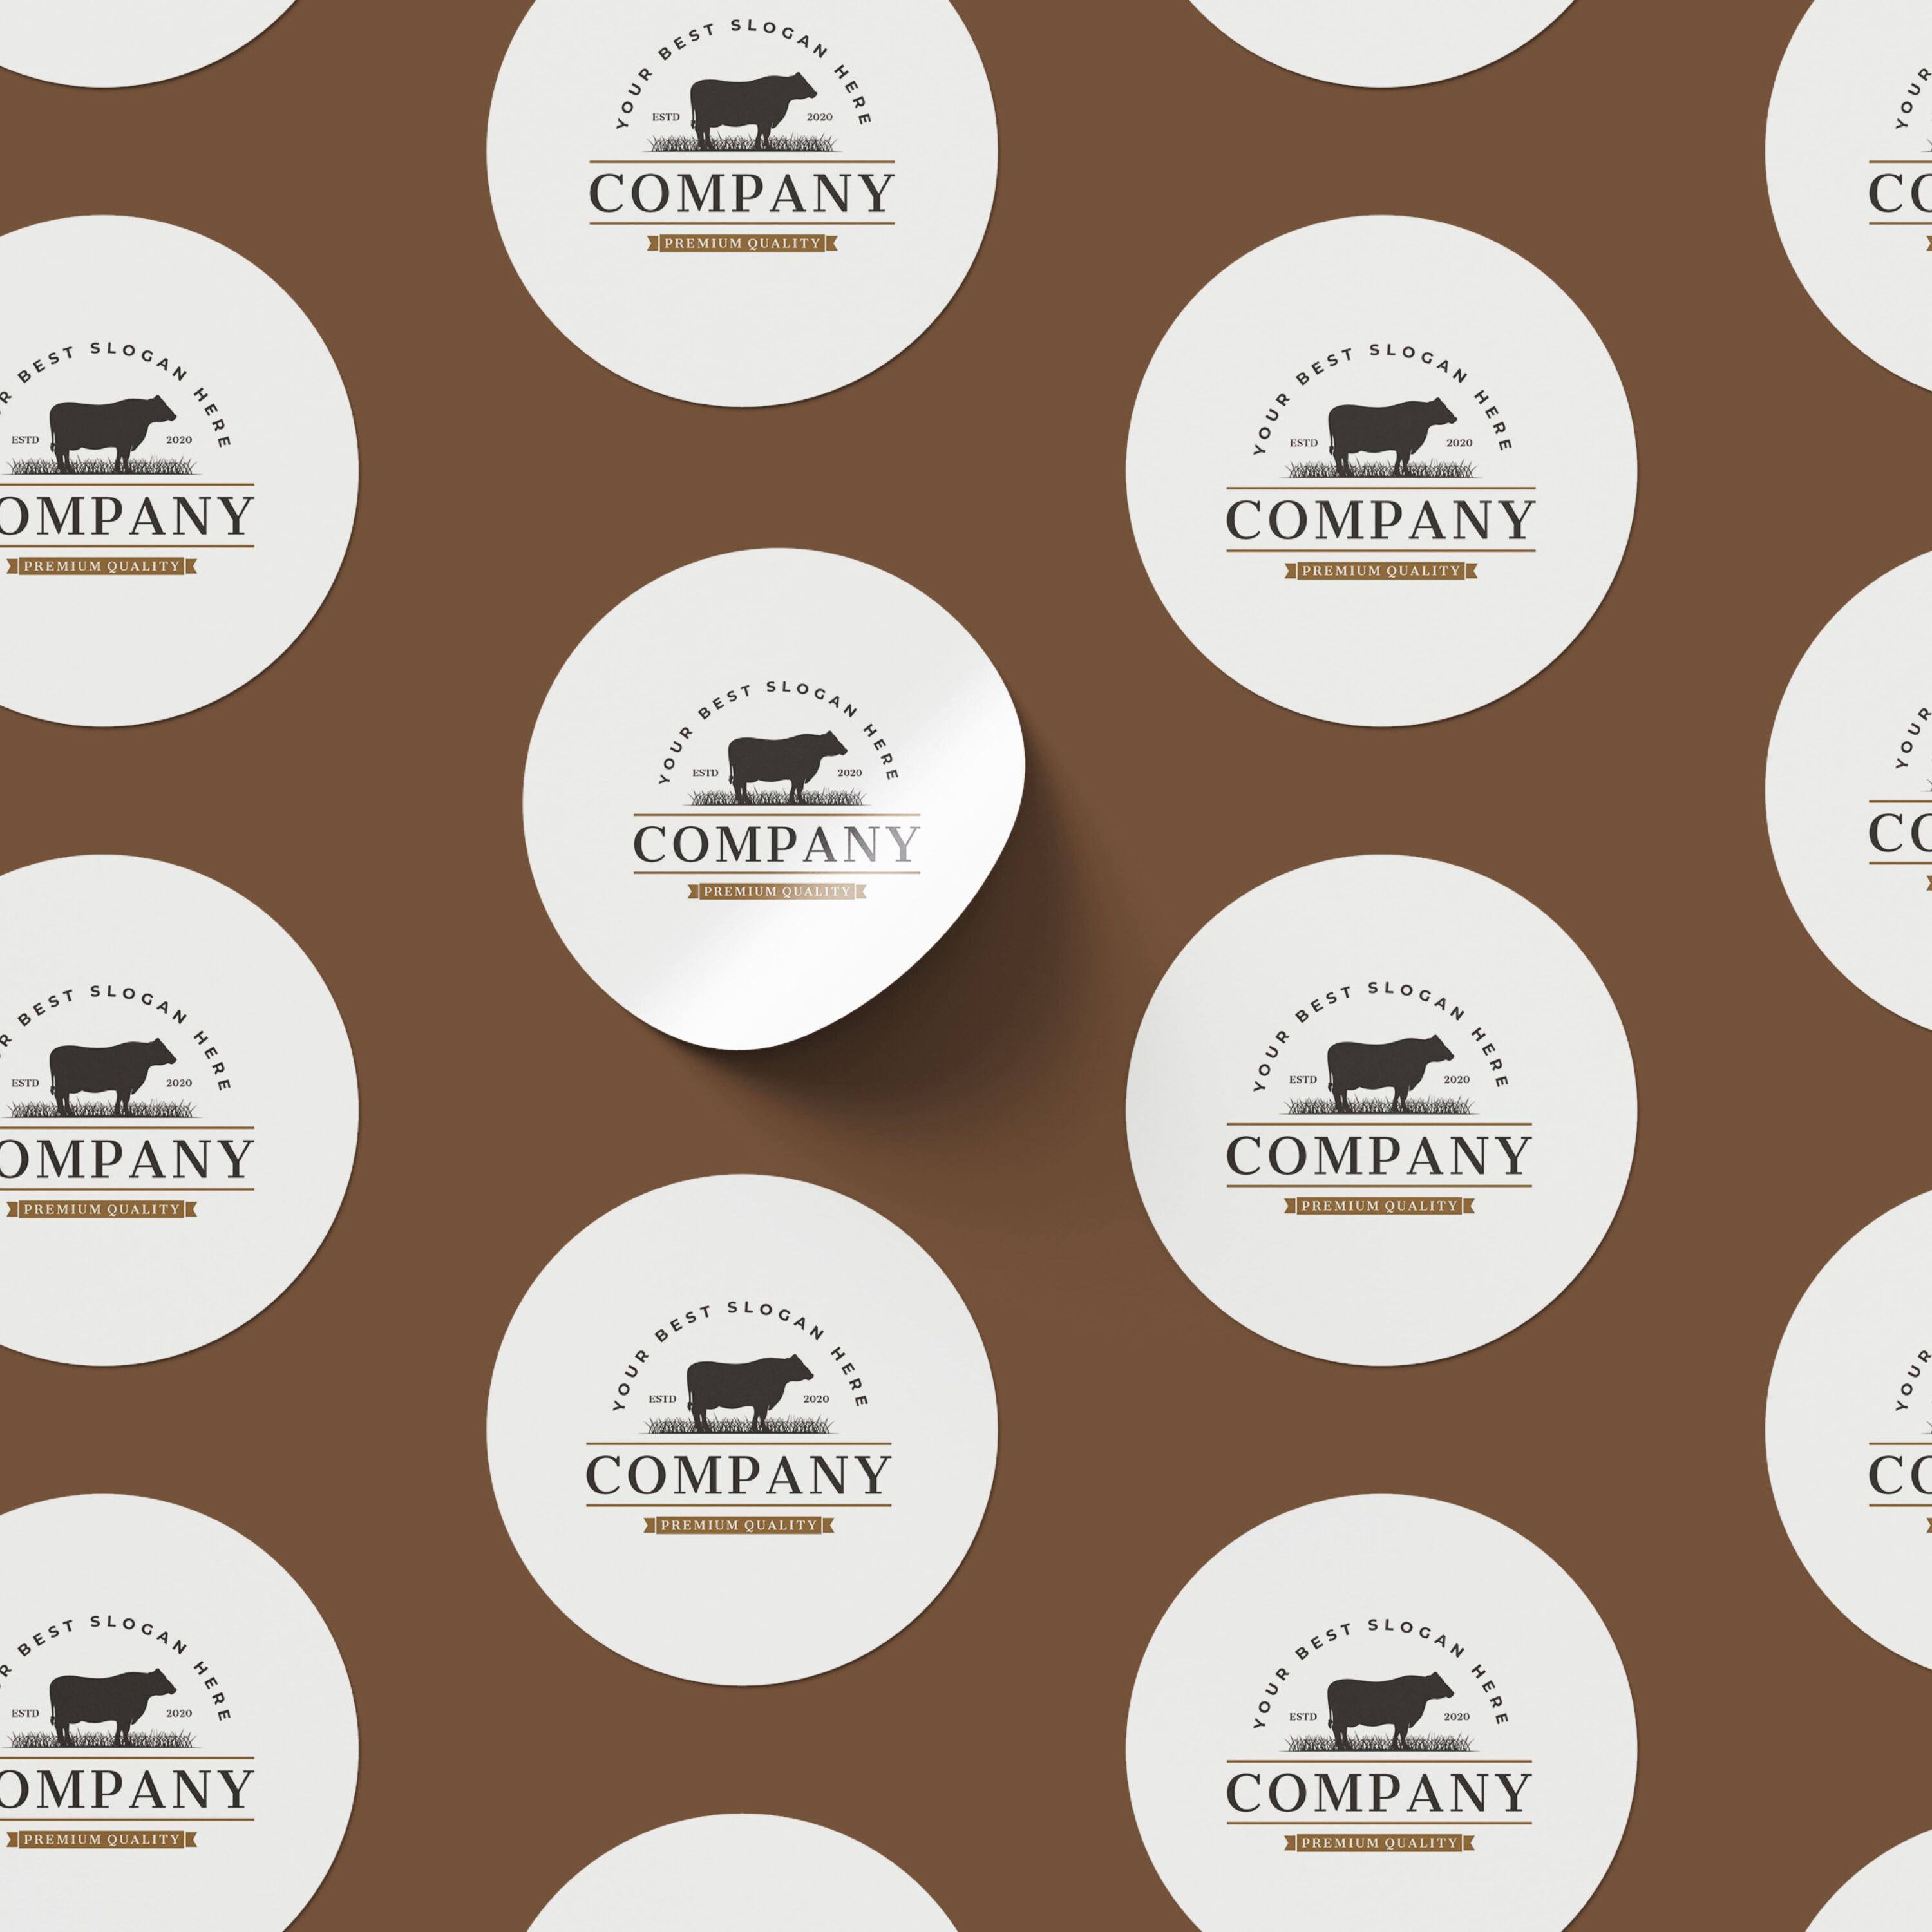 Livestock farming cow logo cover.